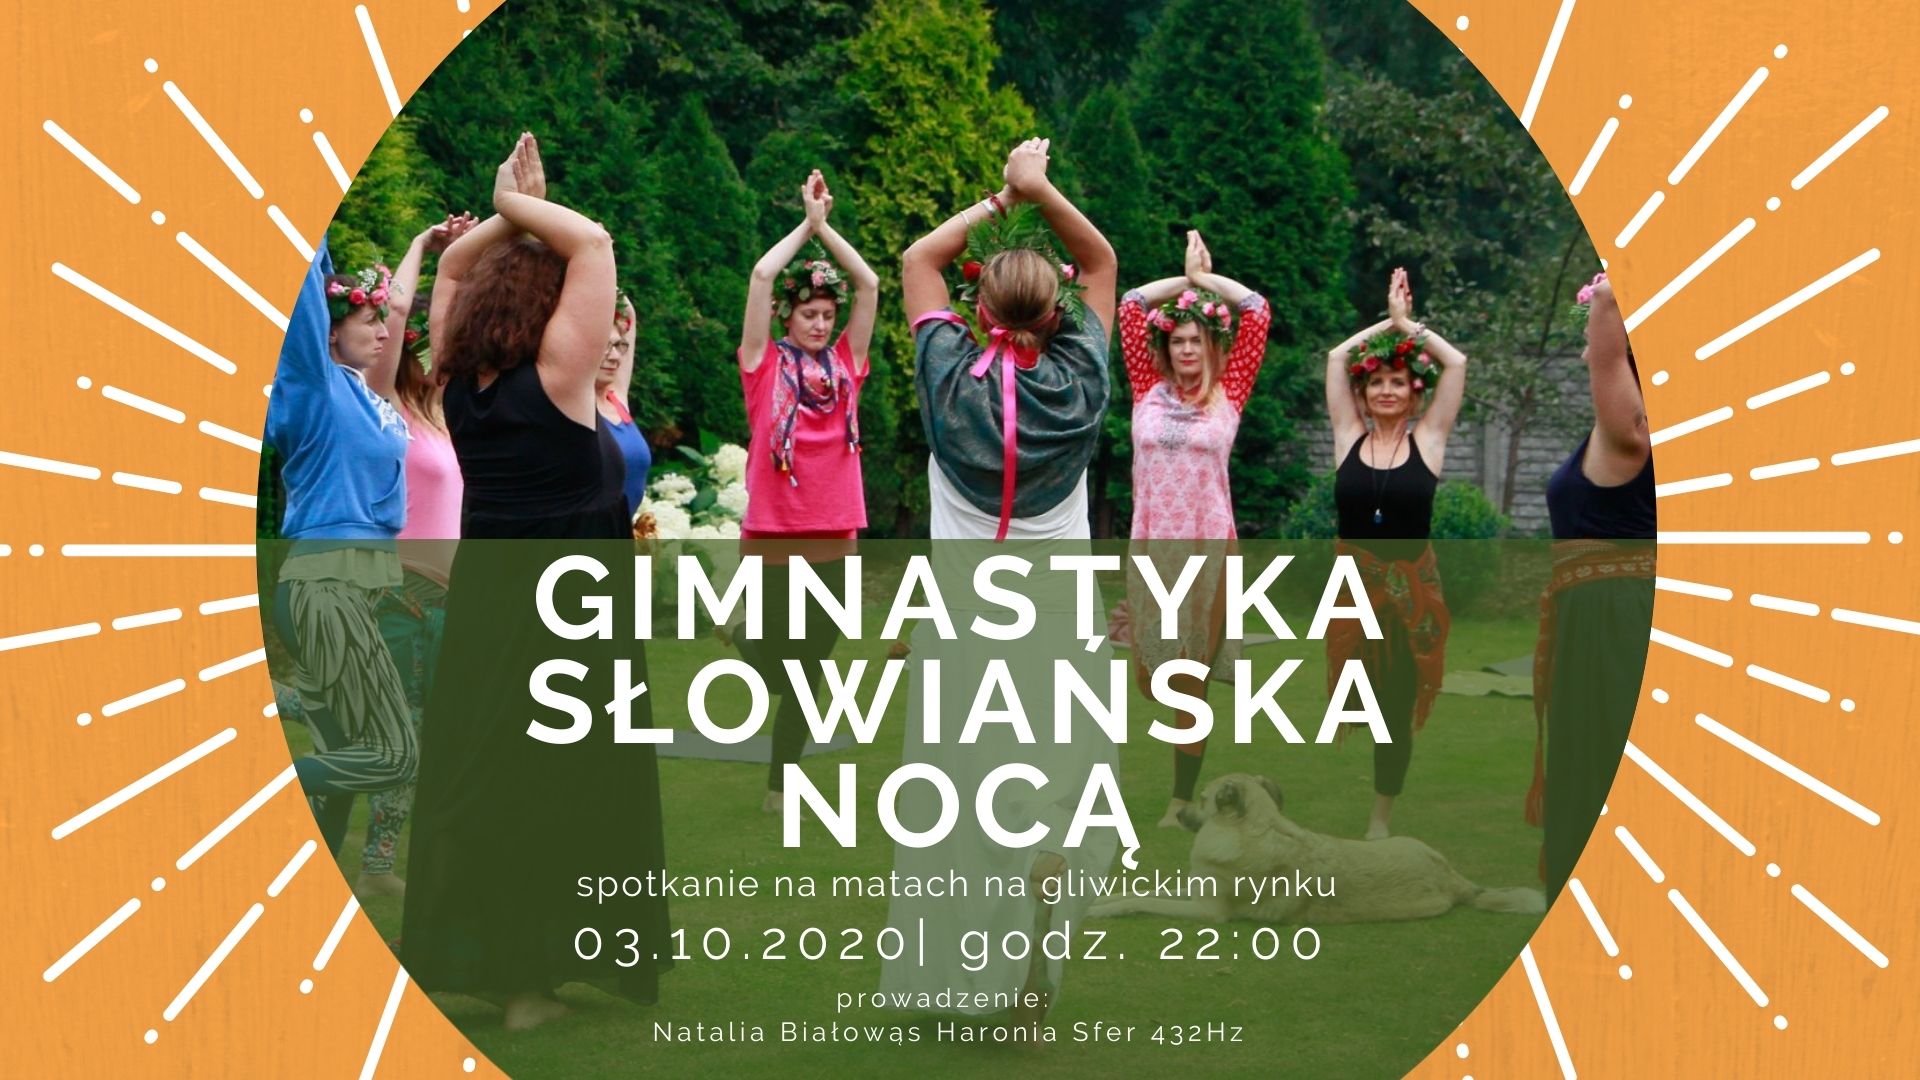 Gimnastyka słowiańska nocą | ArtNoc 2020